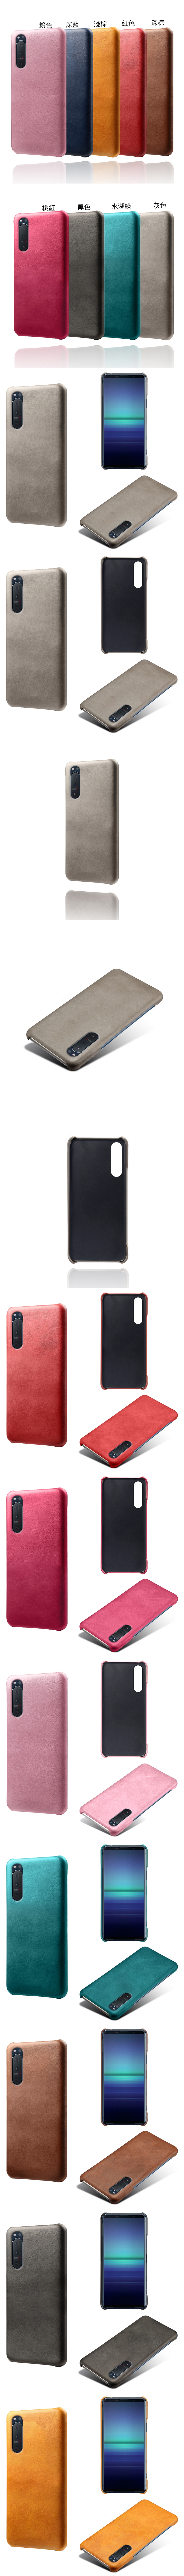 Sony Xperia 1 ii 皮革保護殼(PLAIN) - 牛皮仿真皮紋單色背蓋素色多色手機殼保護套手機套